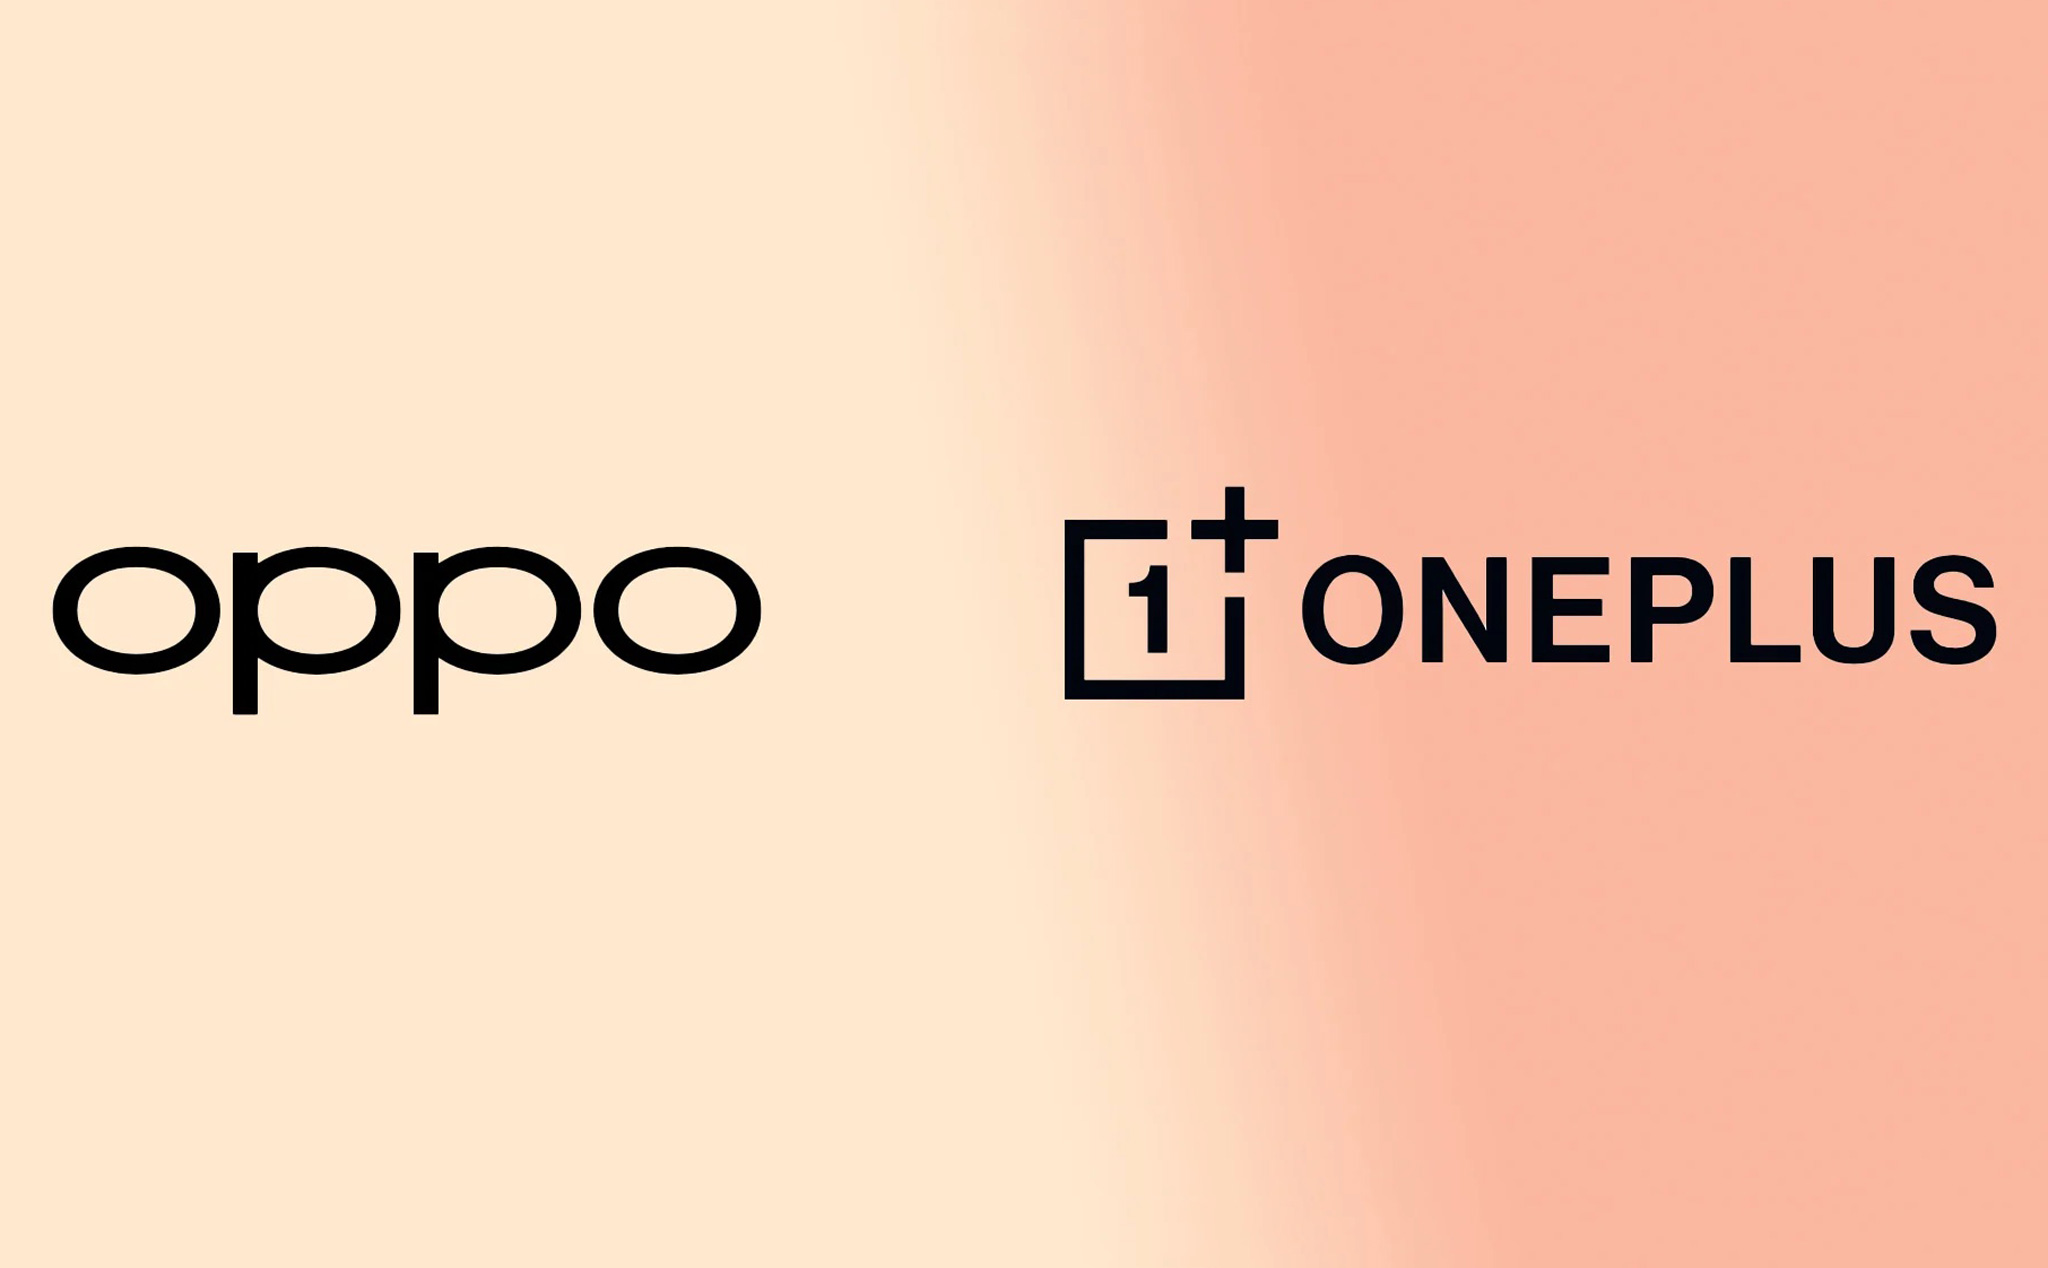 Quên việc OnePlus hợp nhất với OPPO đi, đây mới là những mối quan hệ đối tác mọi người đều mong chờ